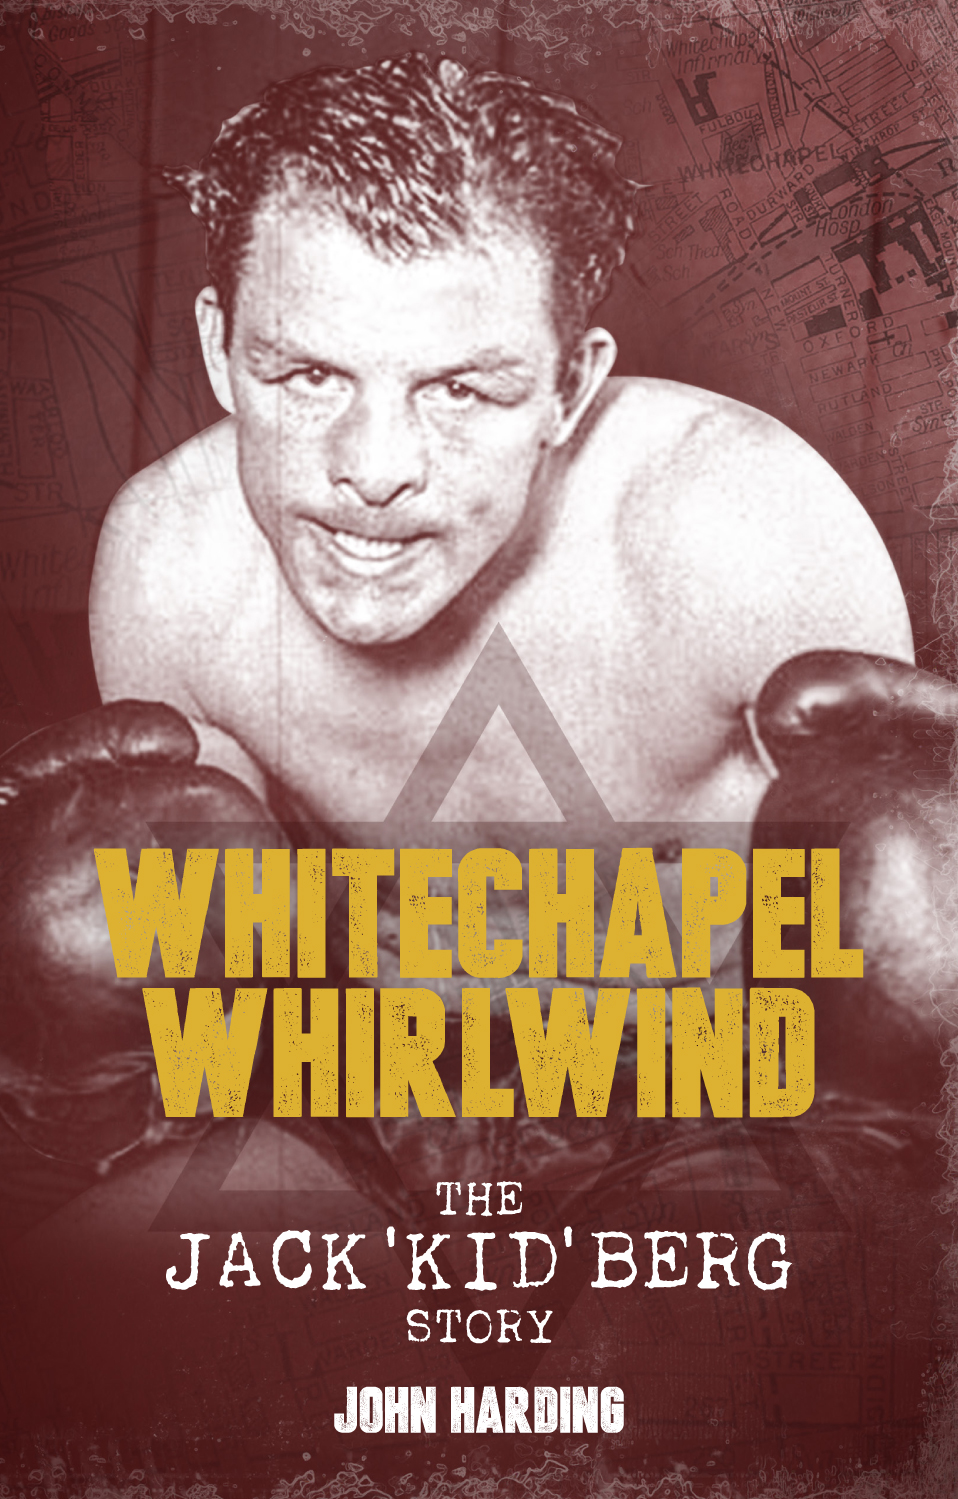 Whitechapel Whirlwind